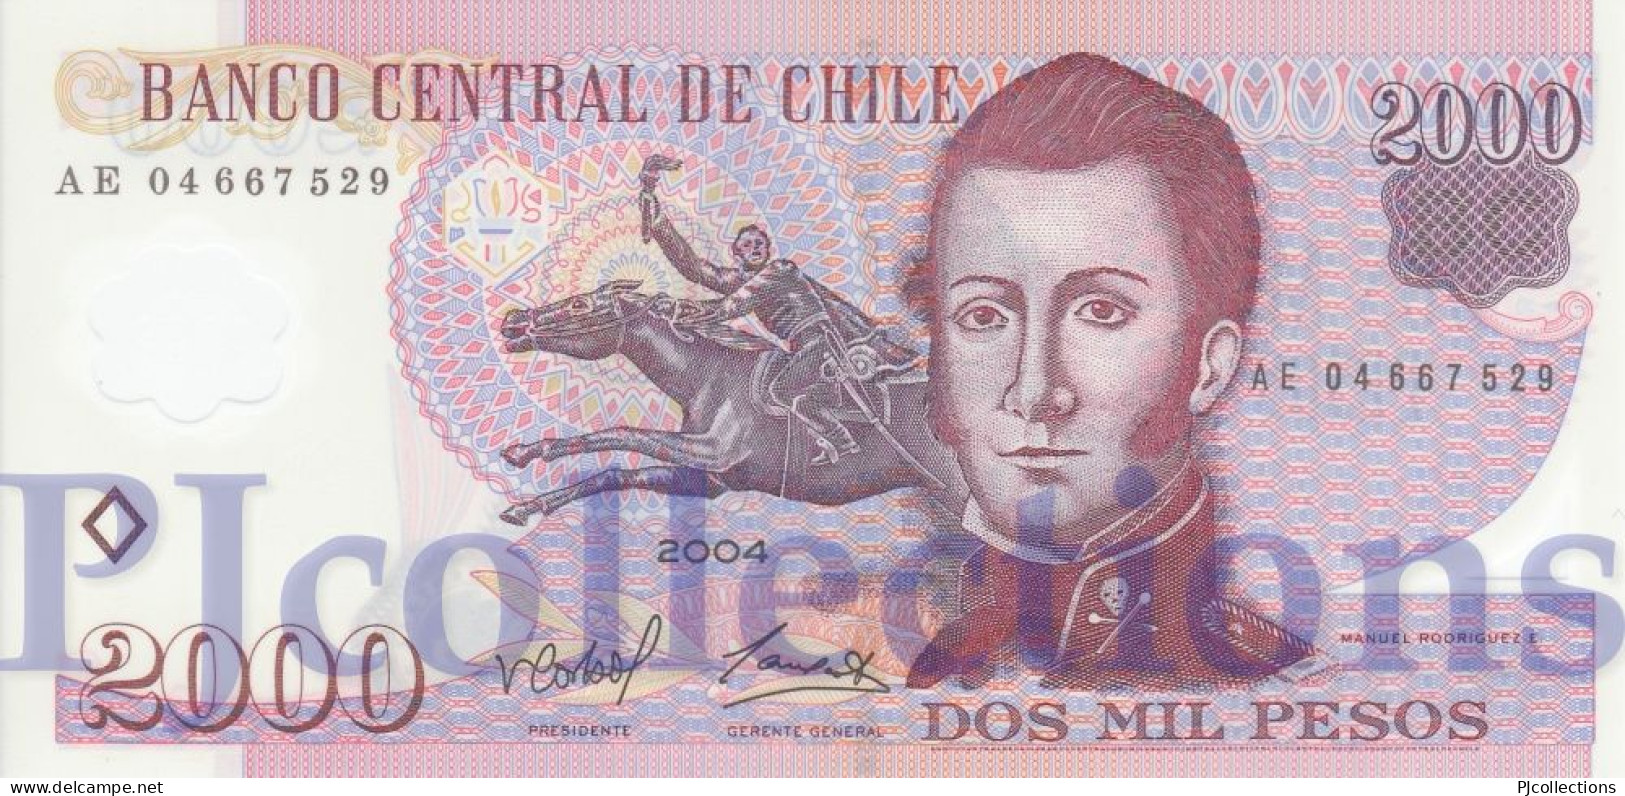 CHILE 2000 ESCUDOS 2004 PICK 160a POLYMER UNC - Chili